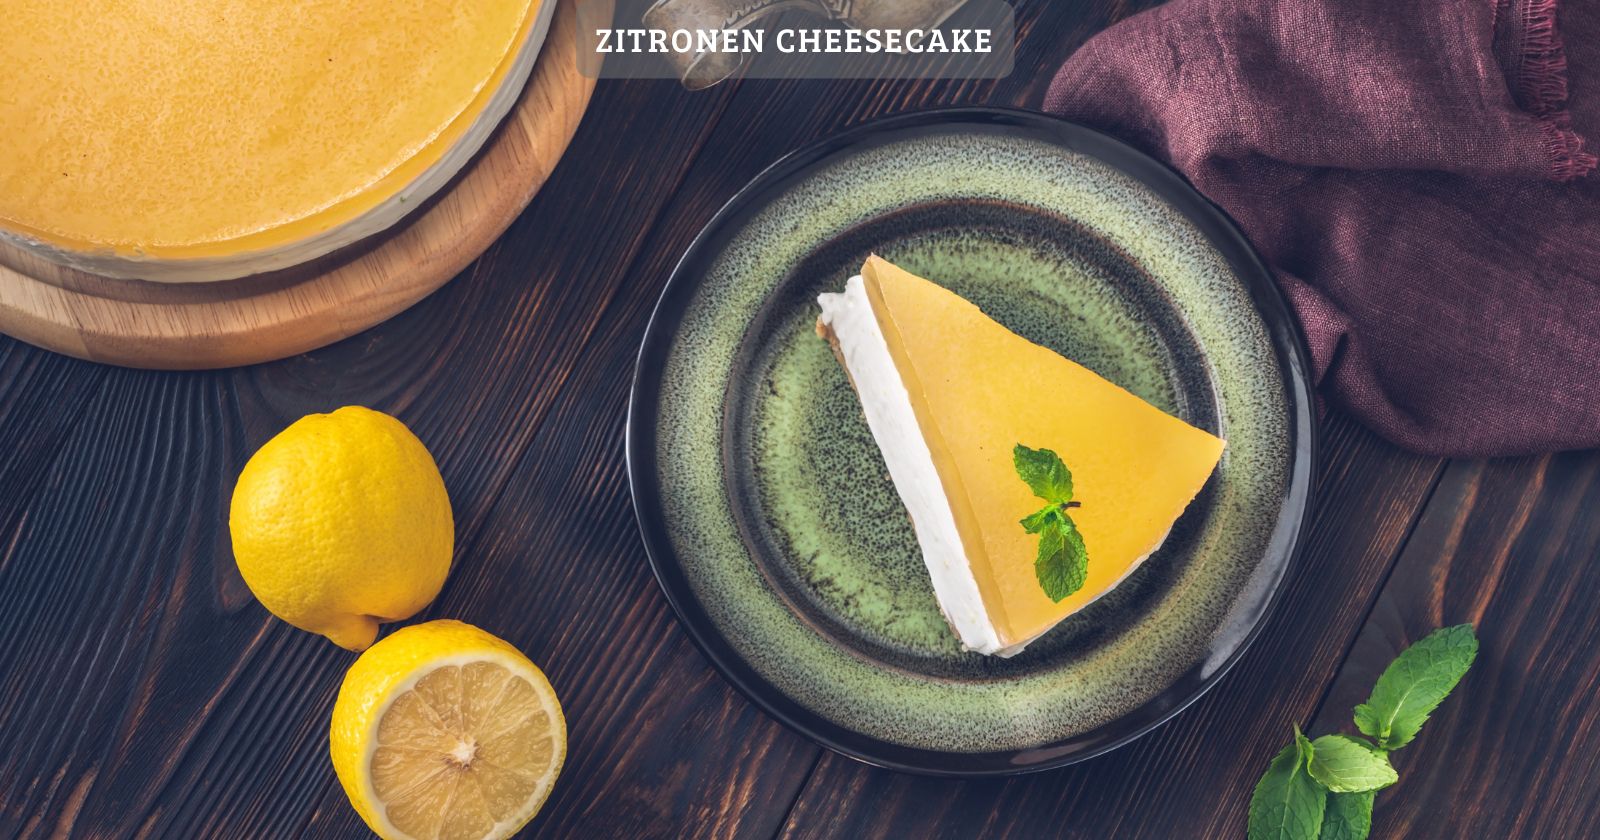 Zitronen cheesecake